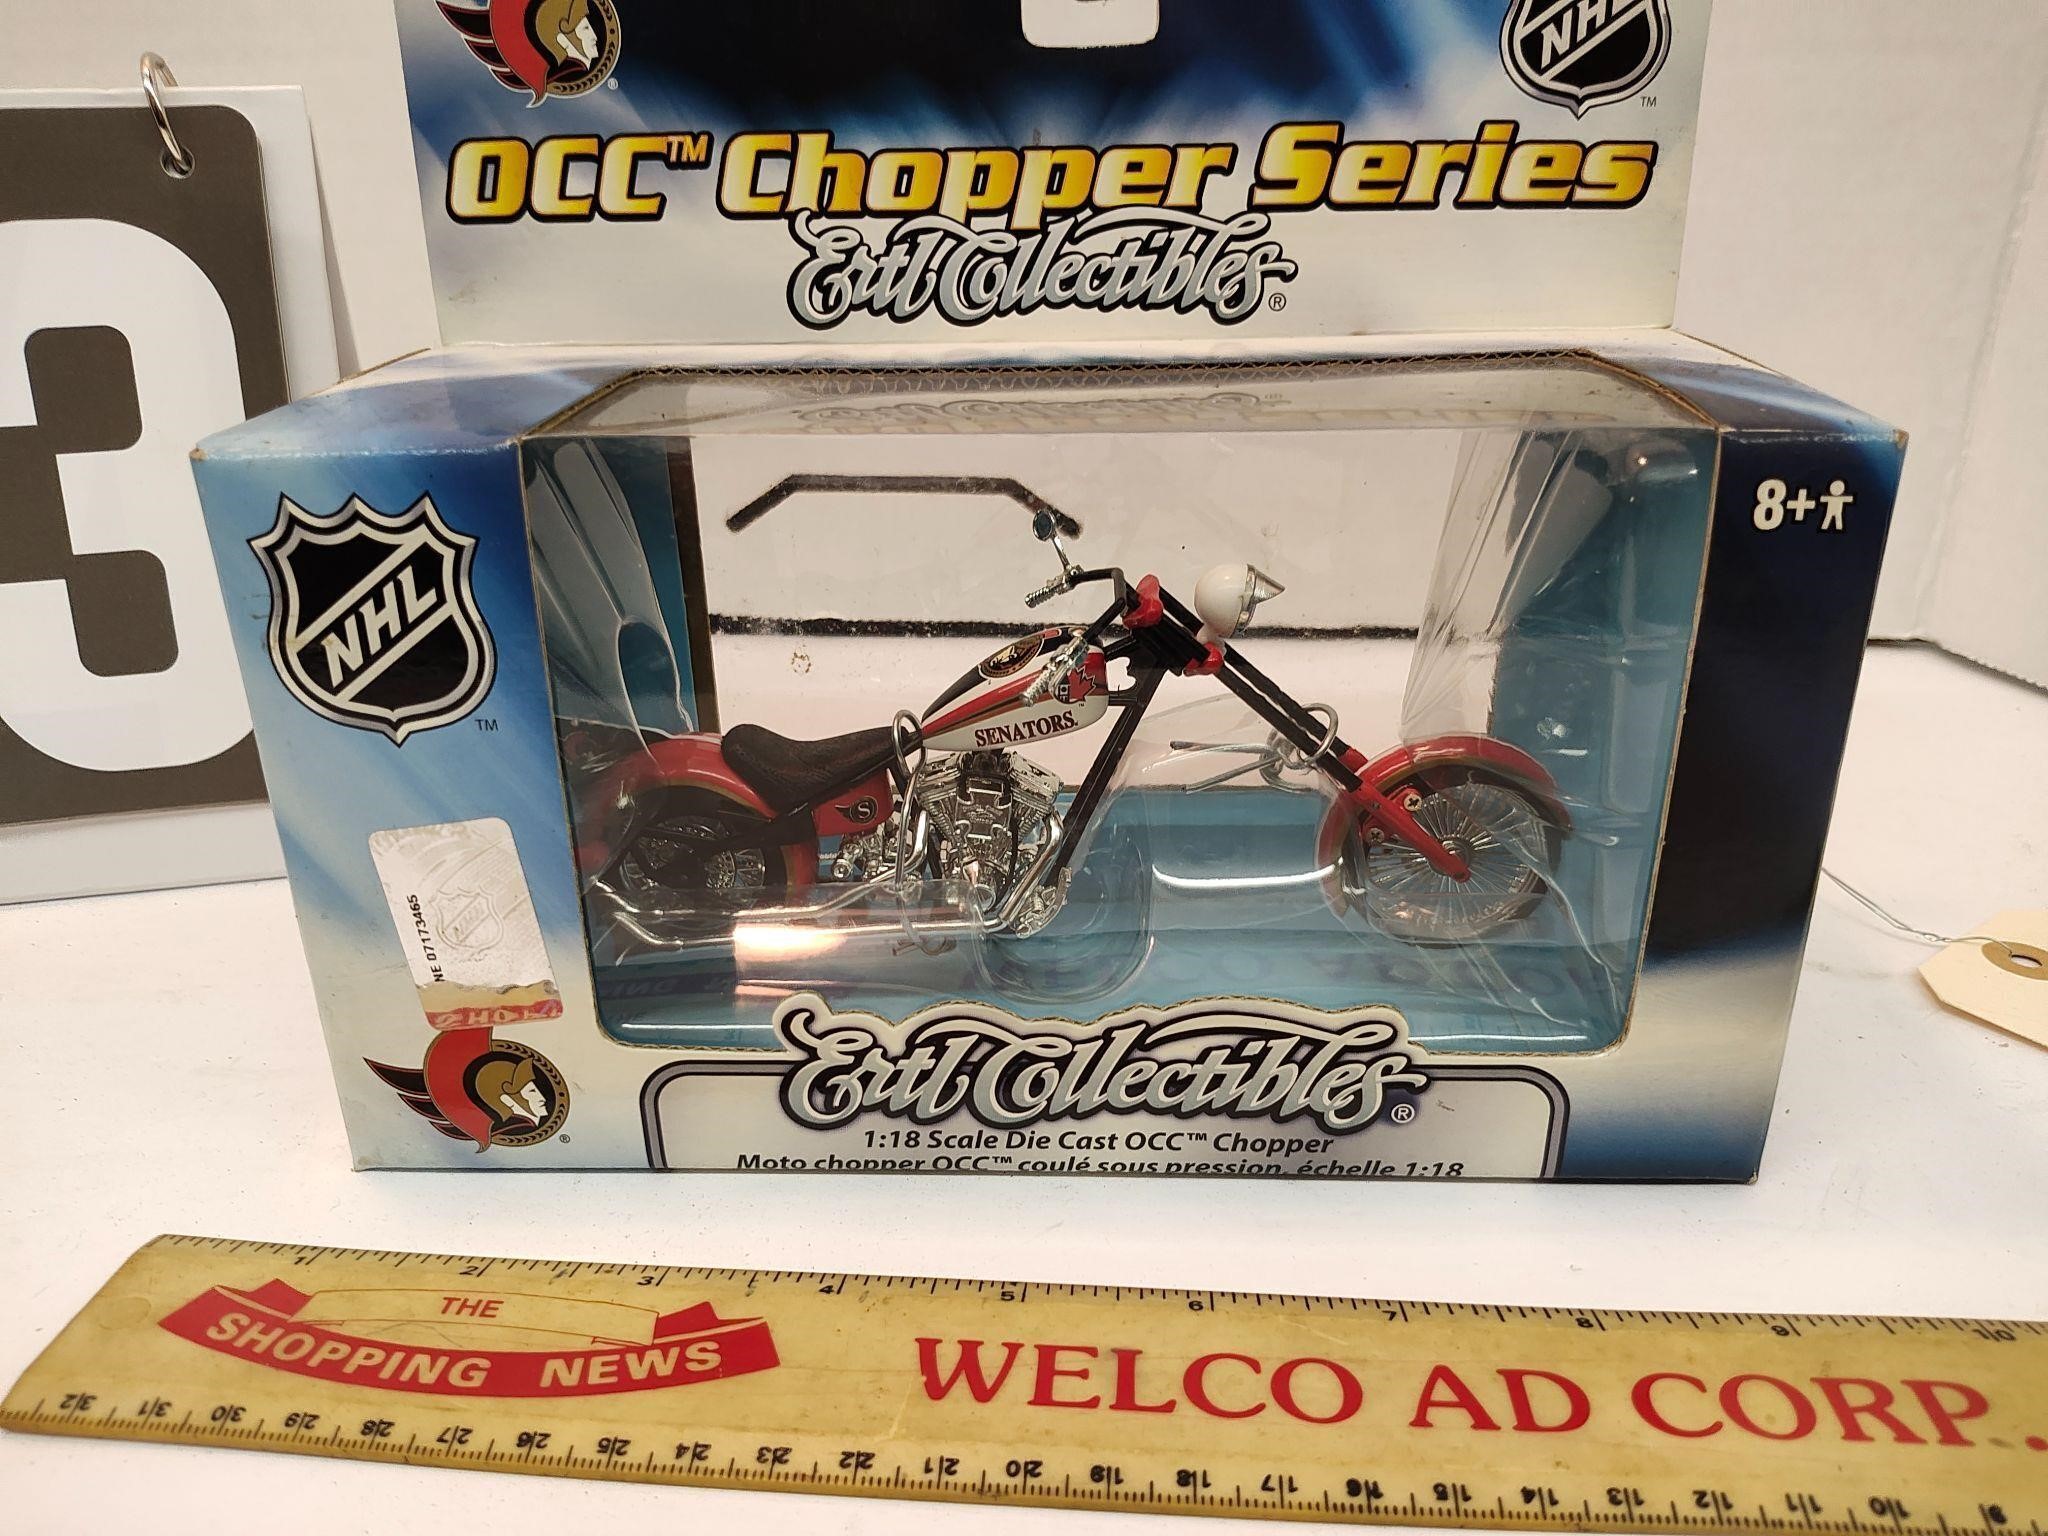 NHL Senators OCC chopper Ertl collectibles.